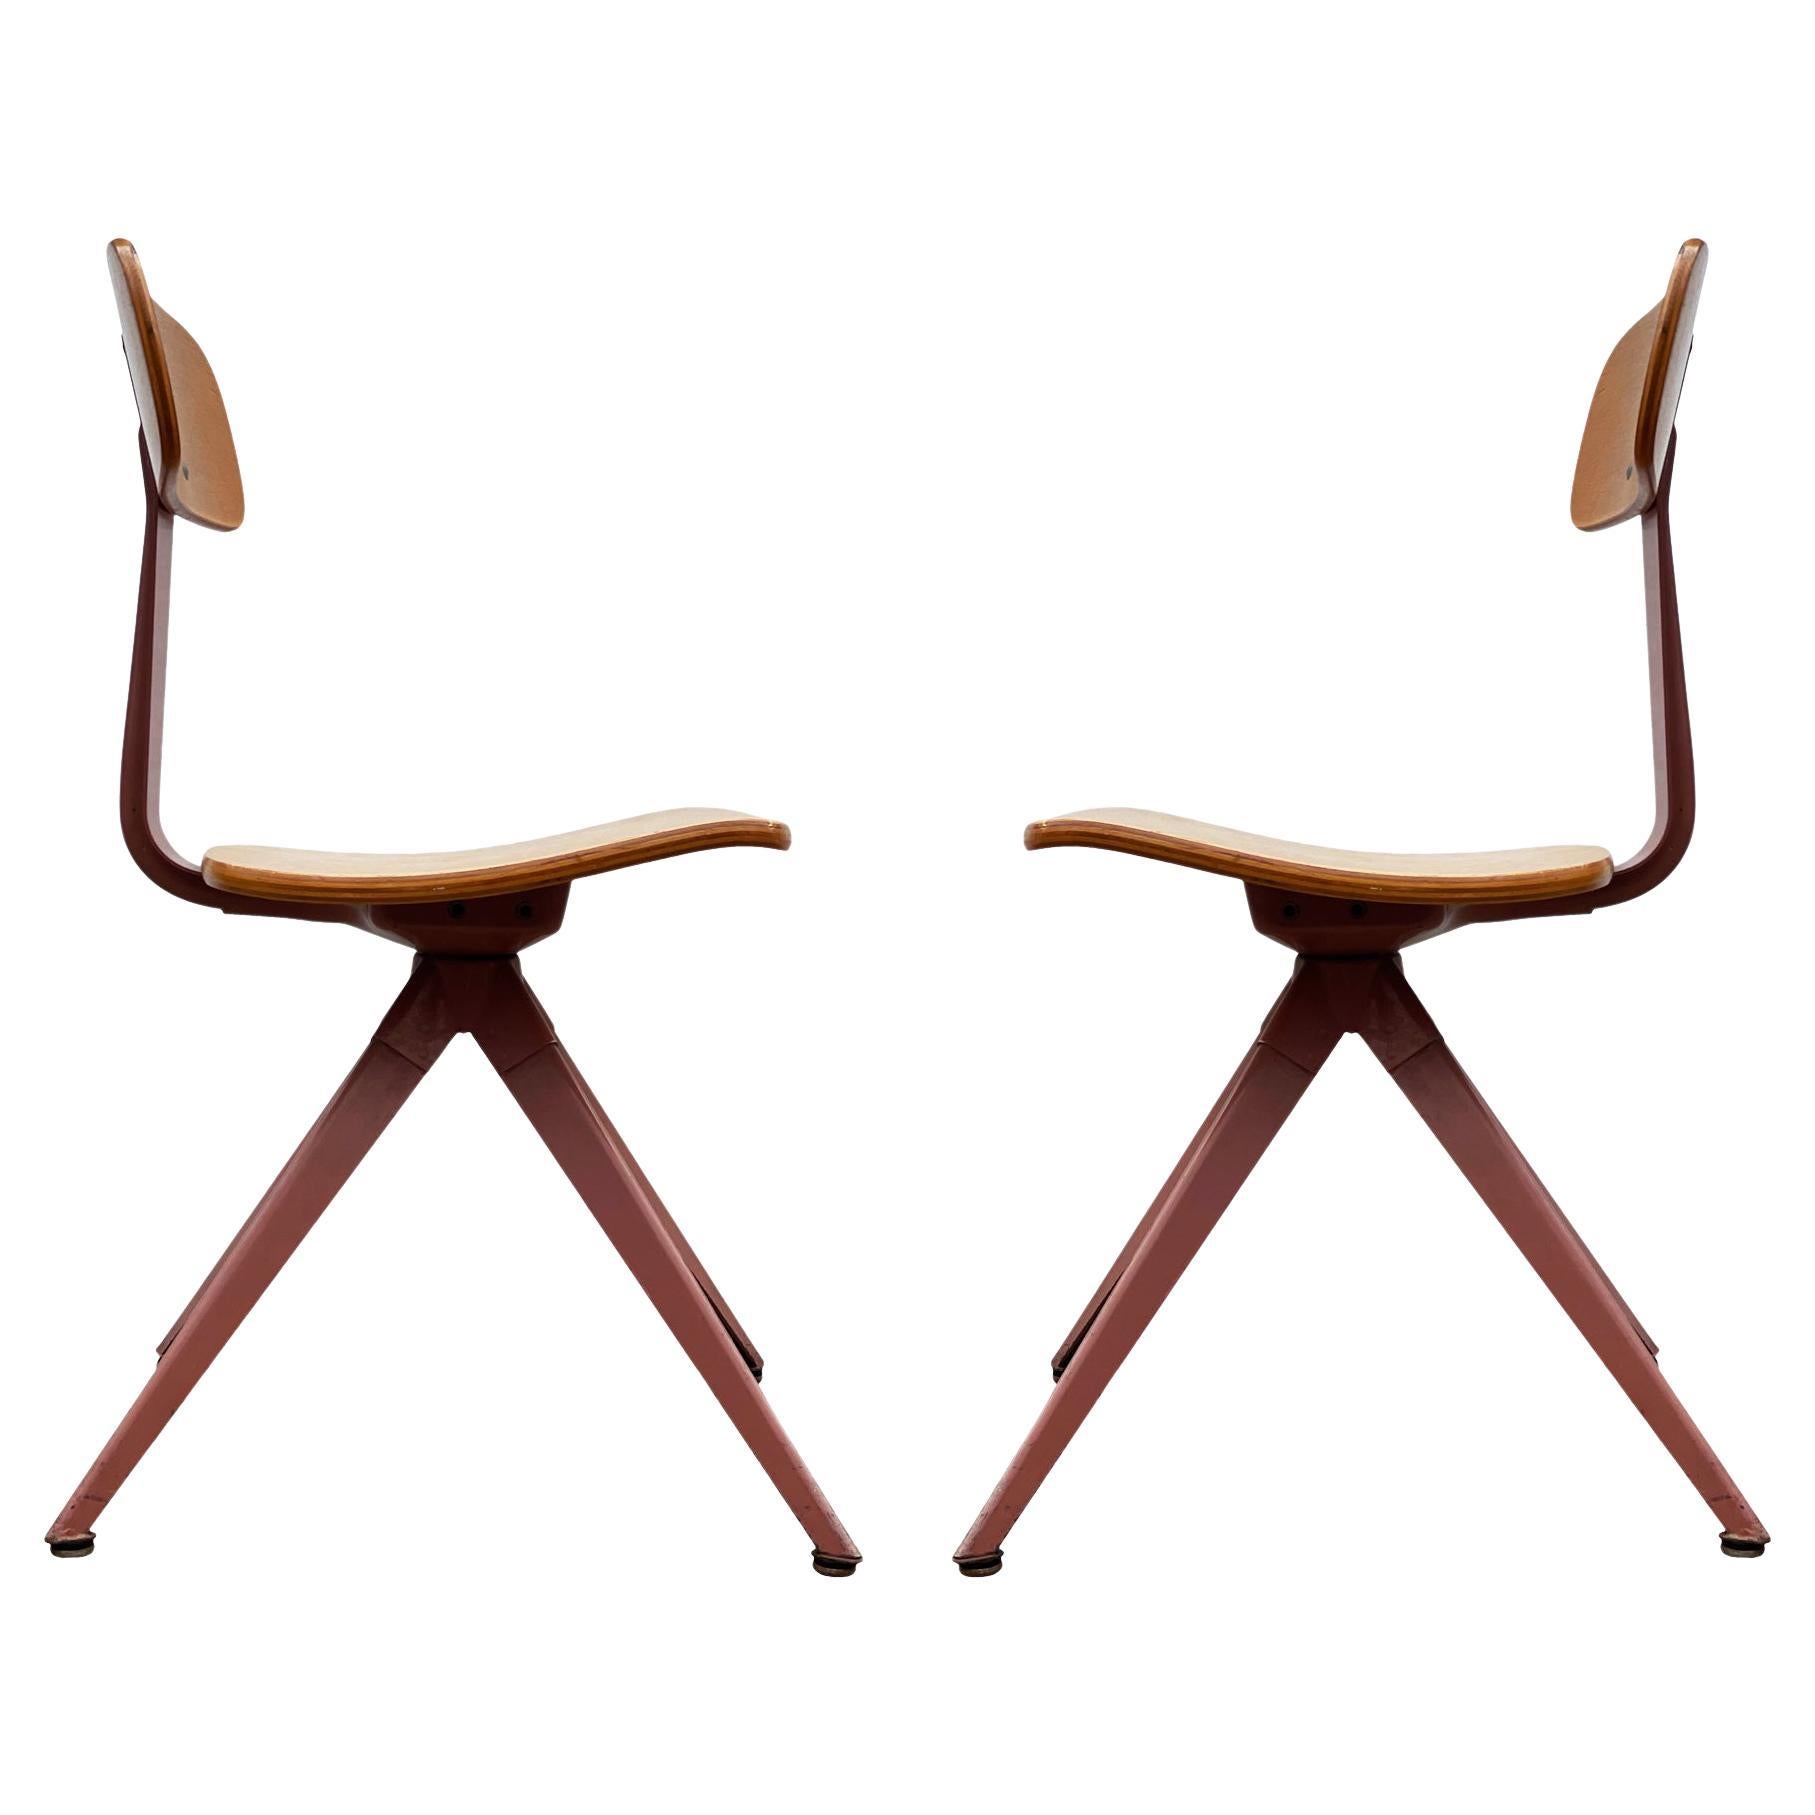 Paire assortie de chaises d'appoint en acier et bois courbé de style industriel et moderne du milieu du siècle dernier